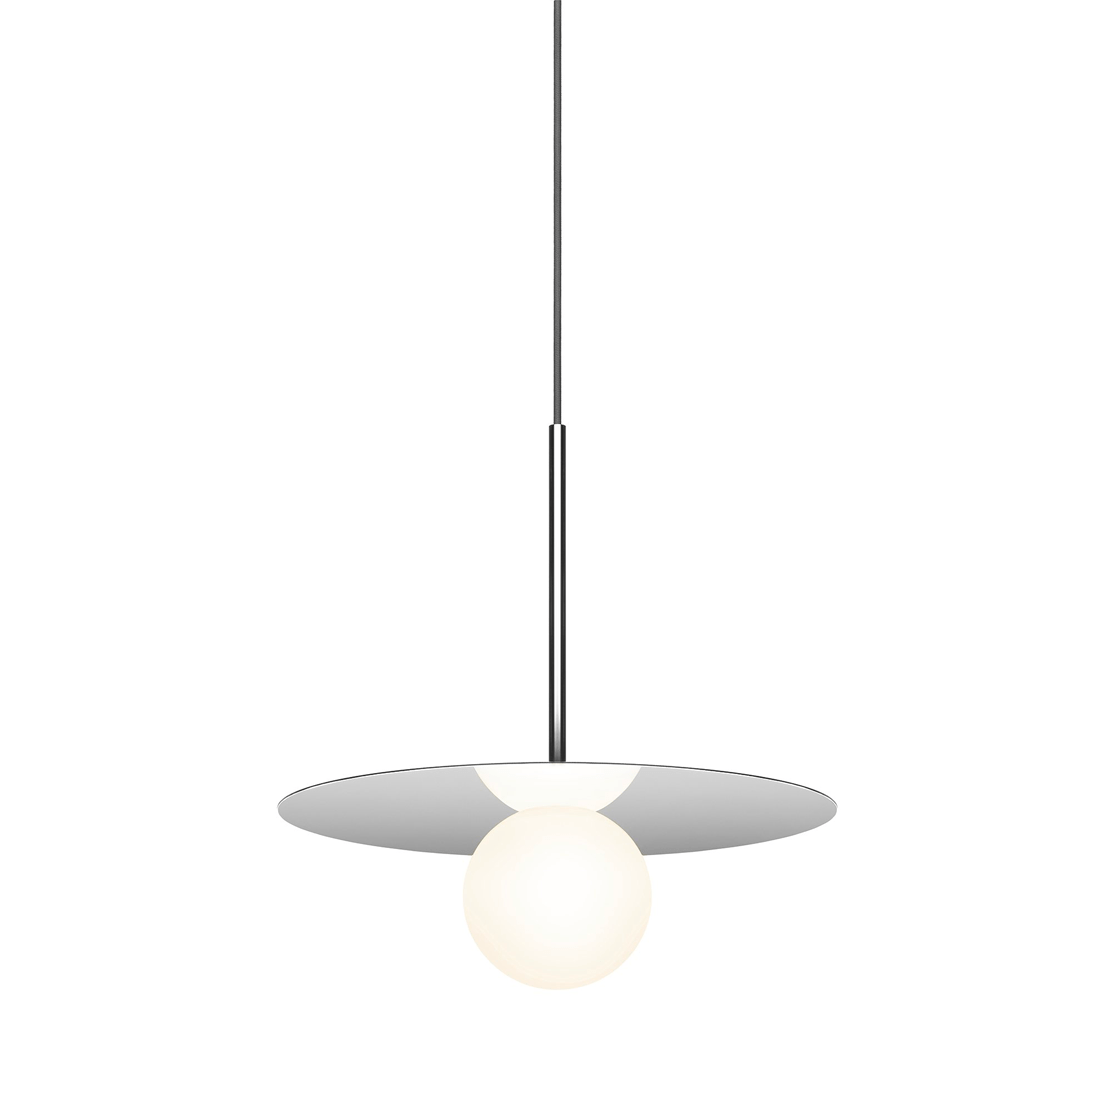 Pablo Designs Bola Disc, lampe suspendue LED avec un globe en verre et un abat-jour en forme de disque, en aluminium, chrome, 12ʼʼ